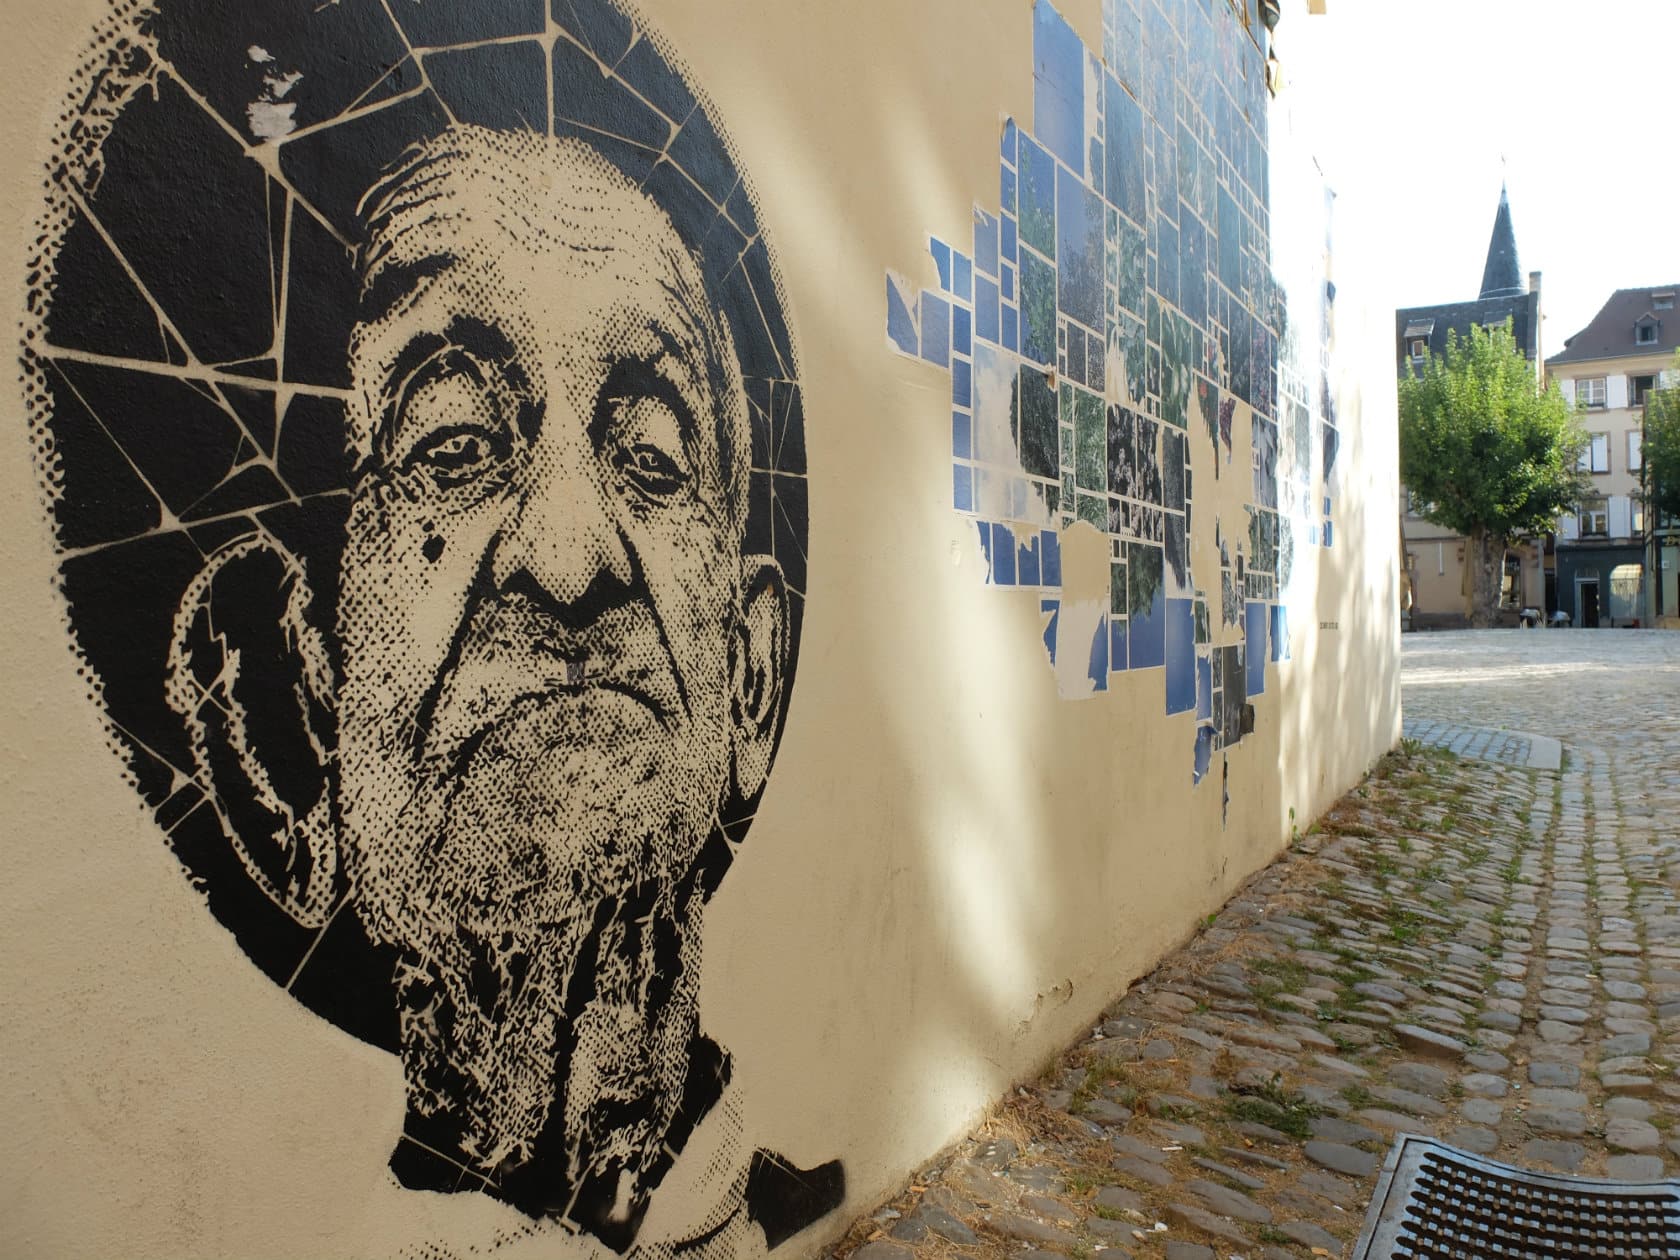 Où sont les oeuvres de street art à Strasbourg